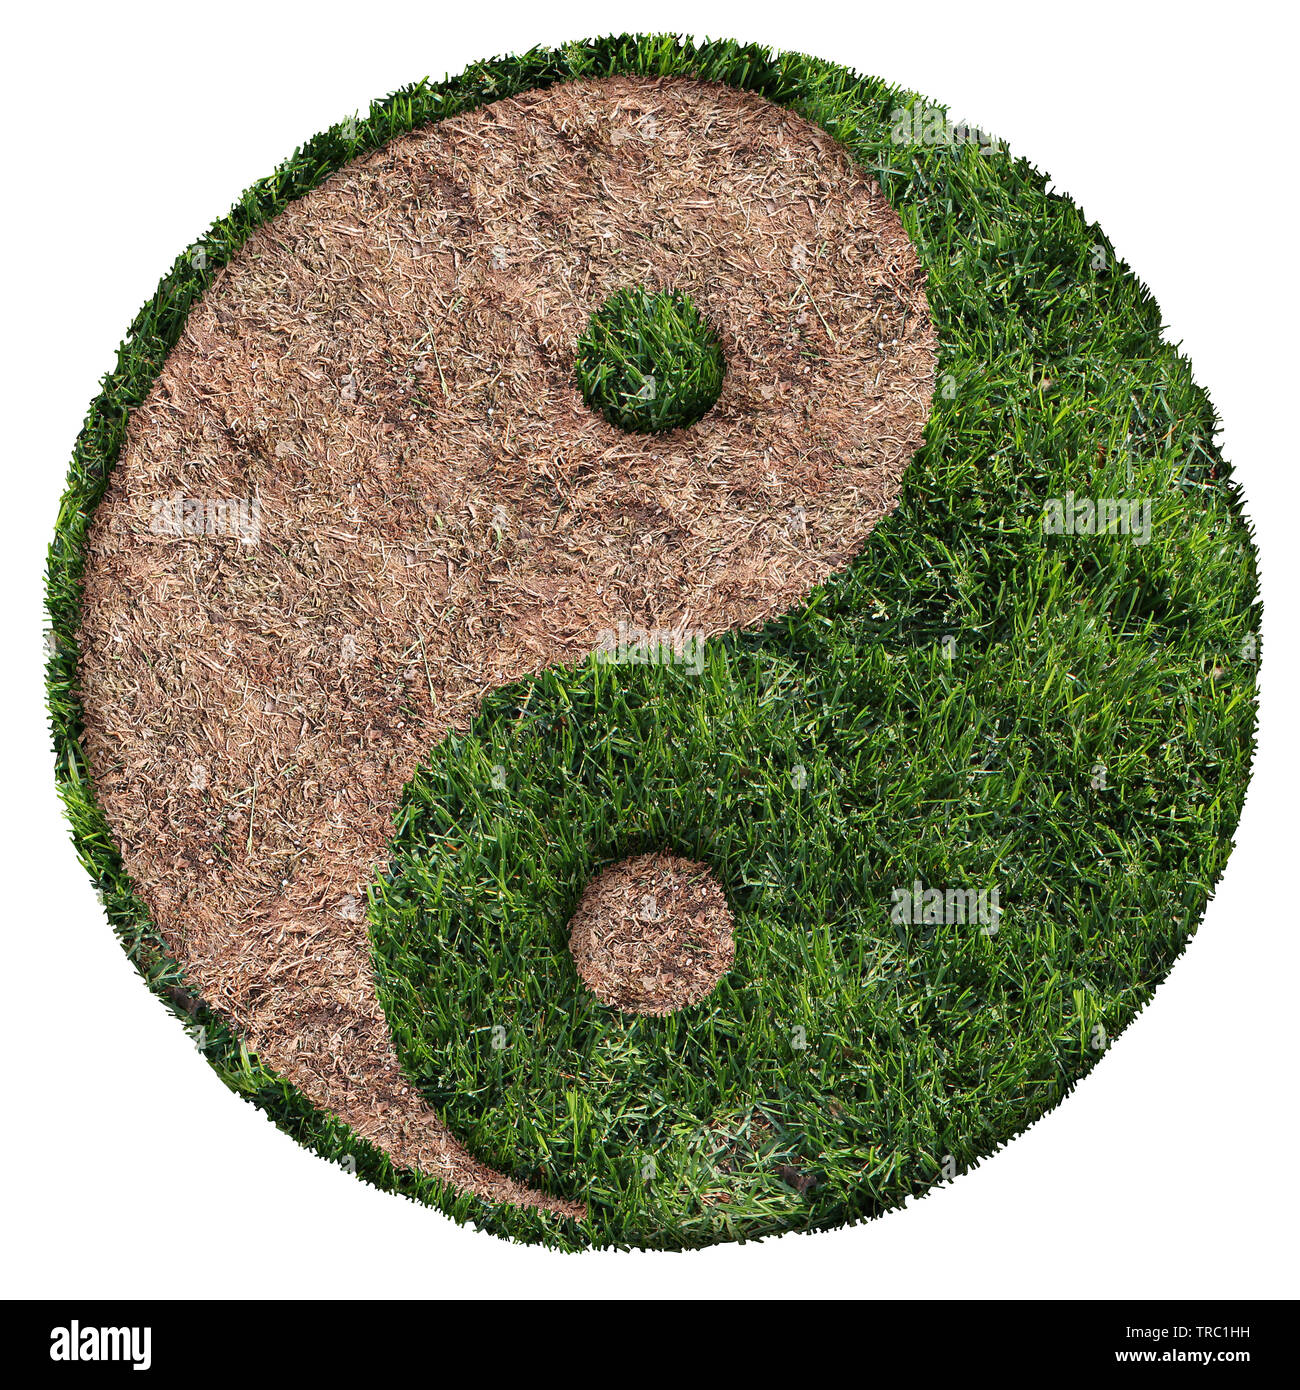 Symbole des pelouses vertes et brunes avec patch et zone de sécheresse en forme de Ying et Yang symbole comme une icône de l'aménagement paysager image composite. Banque D'Images